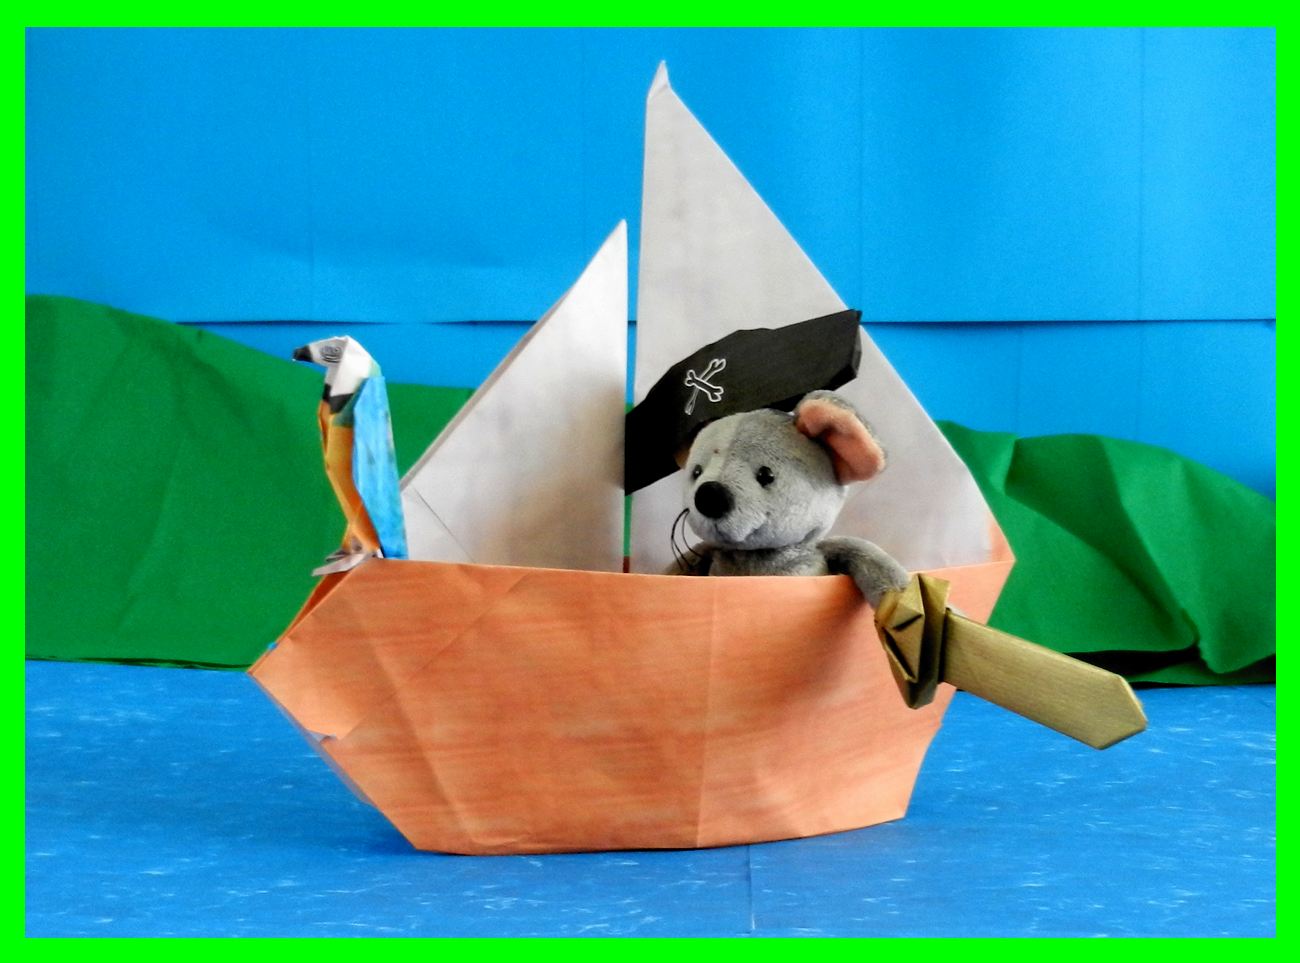 briefkaartje met een muis in een piratenbootje